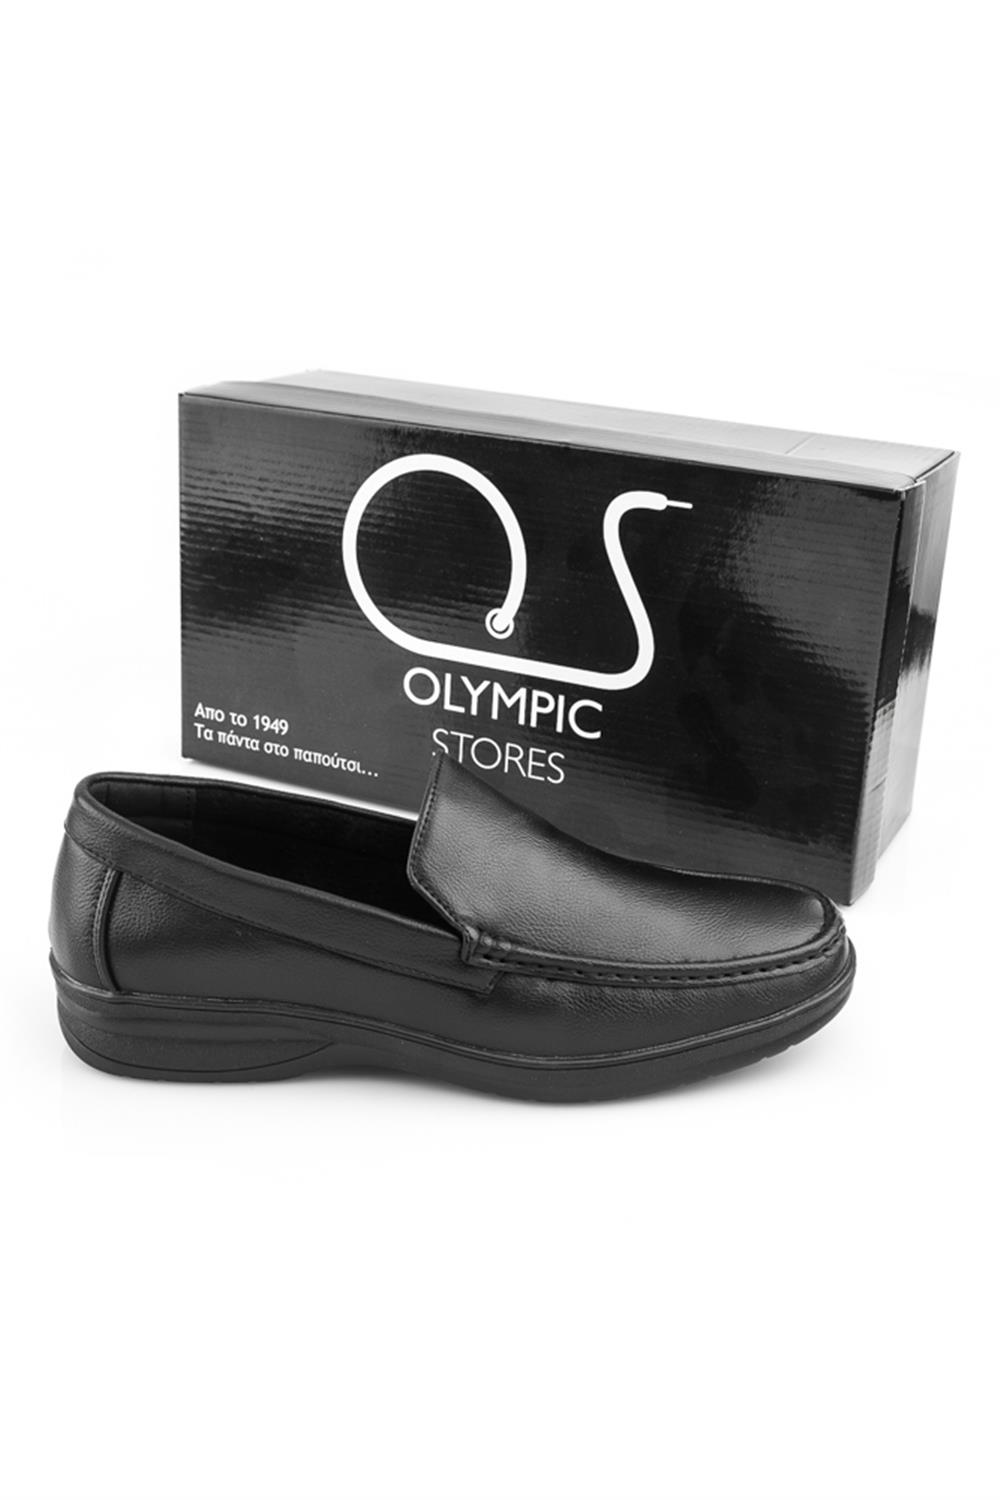 Ανδρικό Παπούτσι by Olympic Stores (Μέσα Δέρμα)